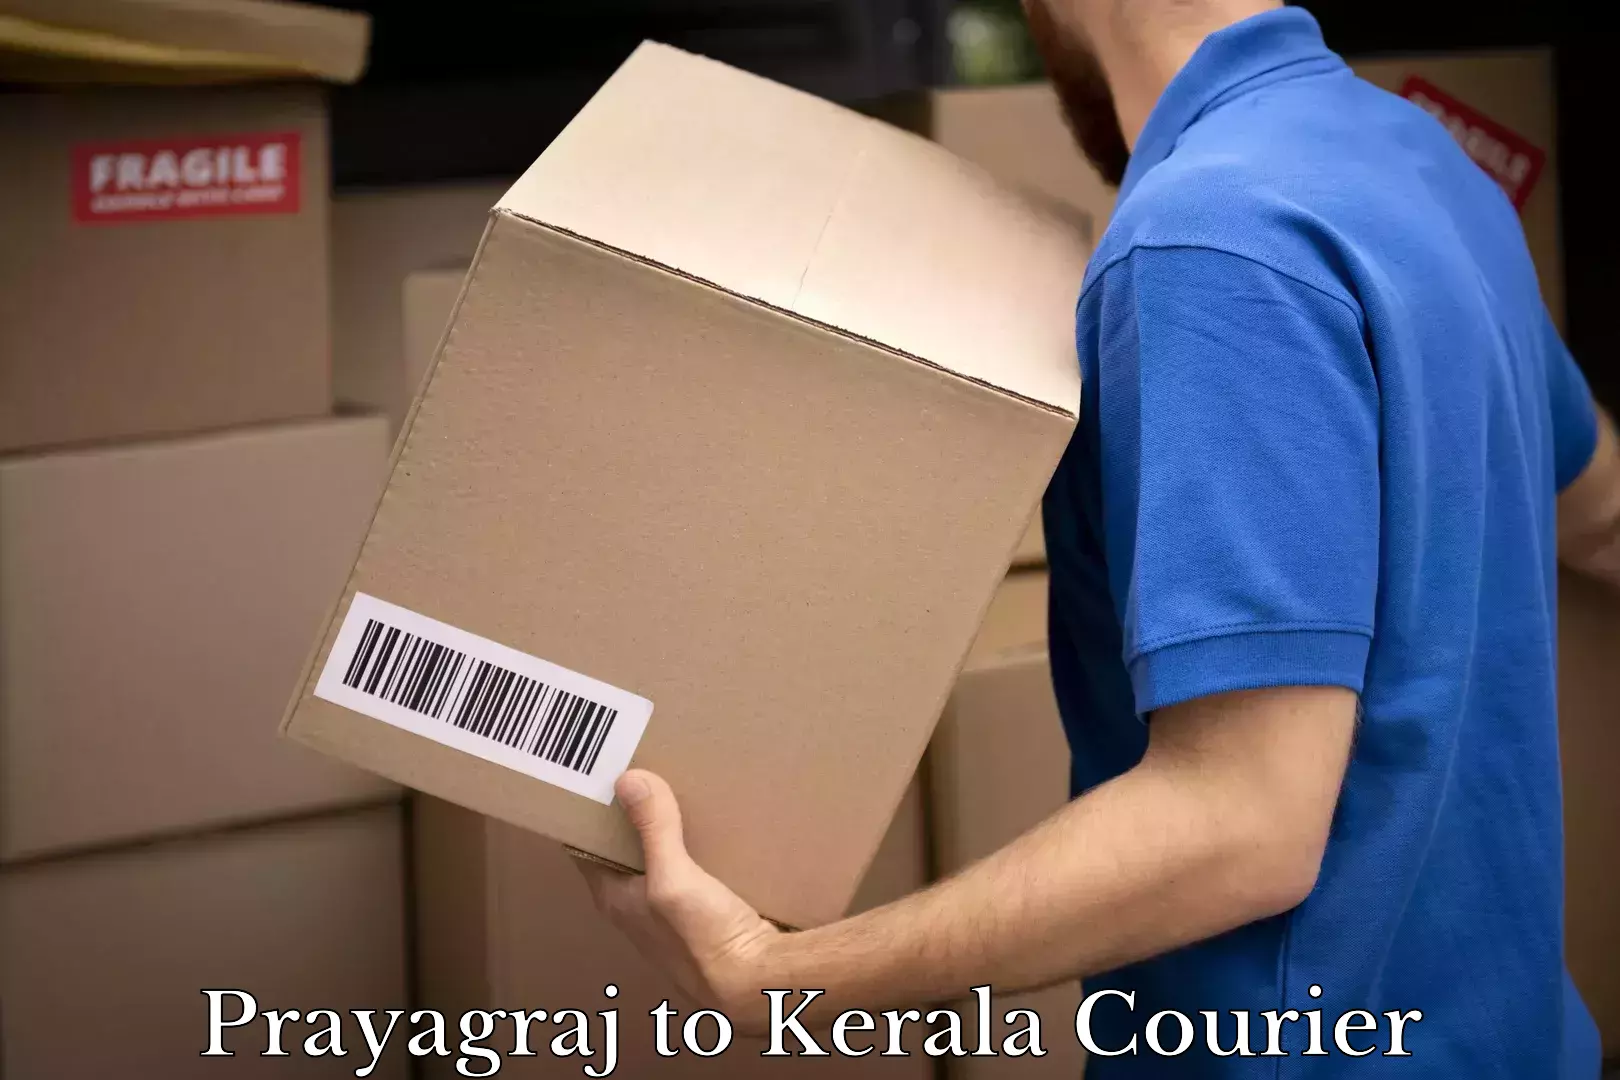 Global shipping networks Prayagraj to Kerala